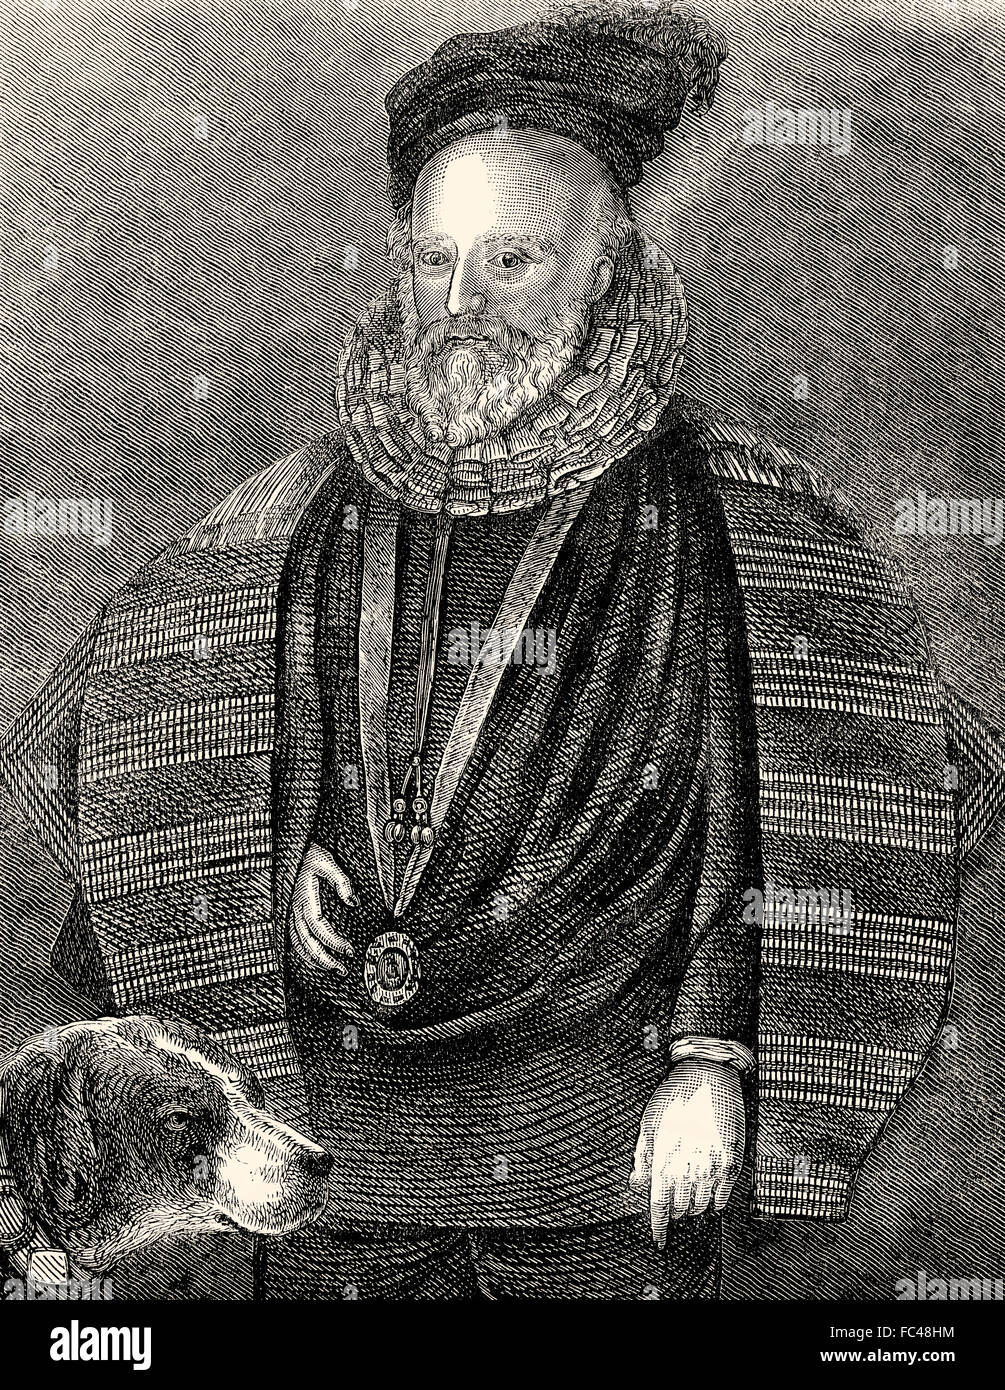 Sir Henry Lee, 1533-1611, de Ditchley, fue campeón de la Reina y el capitán del Arsenal bajo la reina Isabel I de Inglaterra Foto de stock